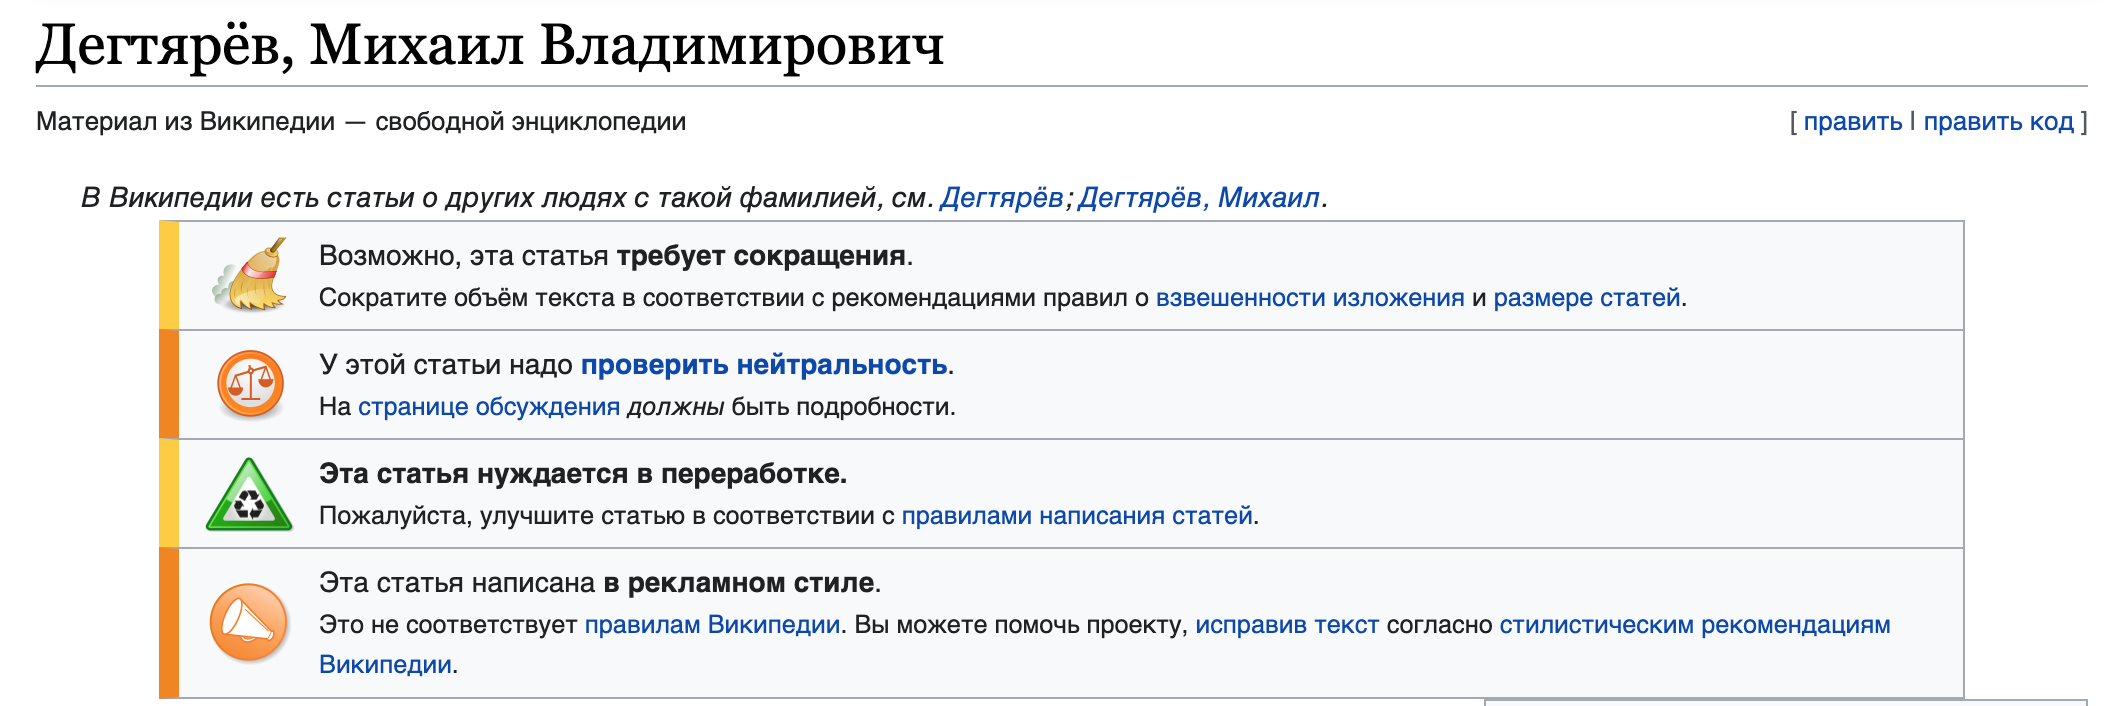 Скрншот статьи про Михаила Дегтярева в Википедии